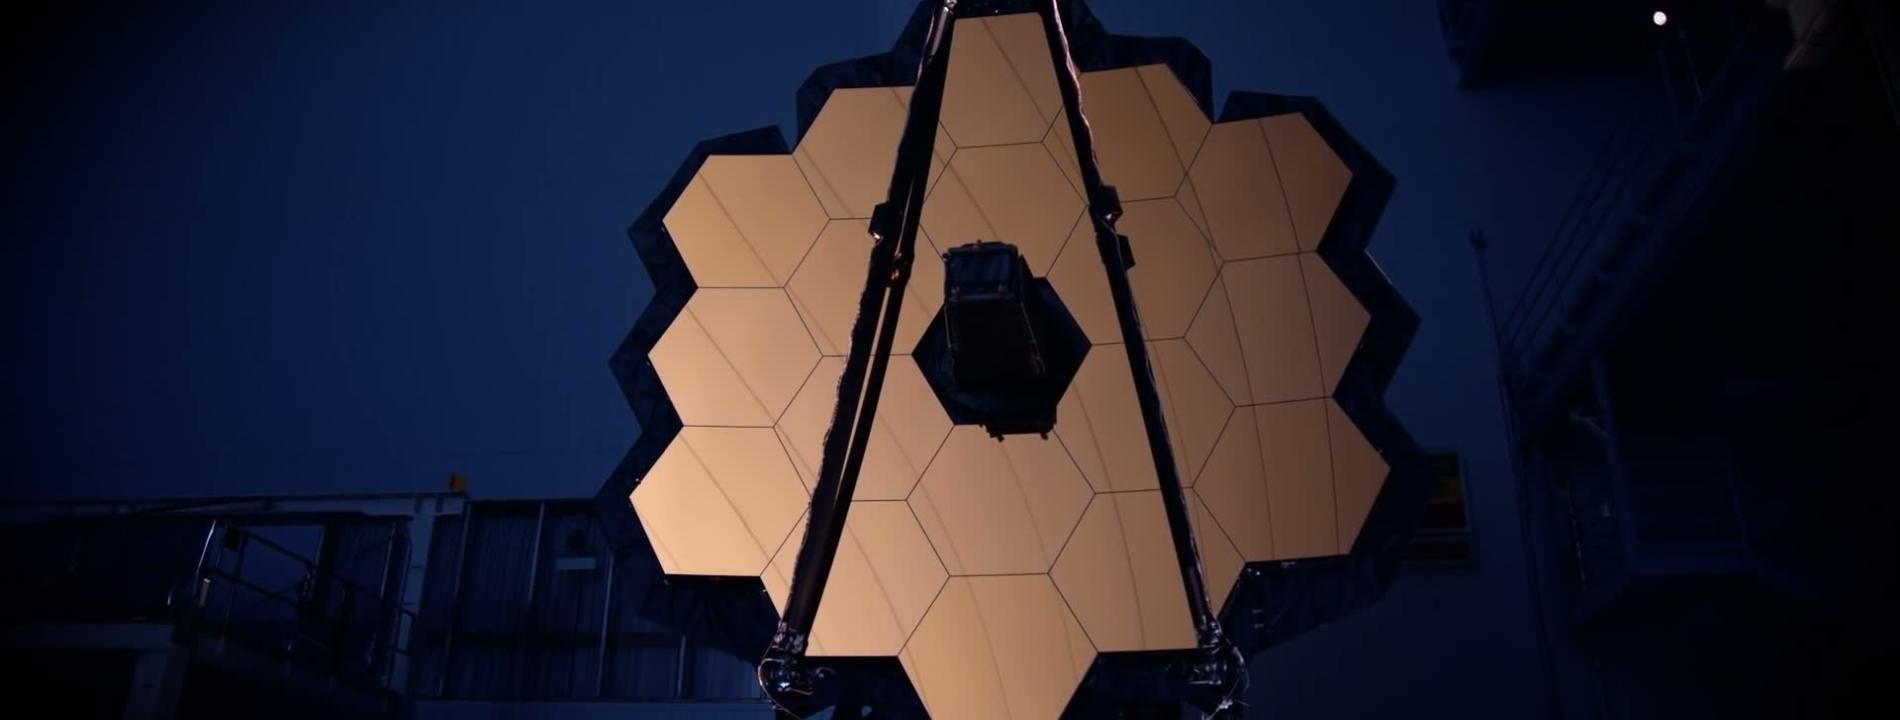 Le télescope de tous les défis 